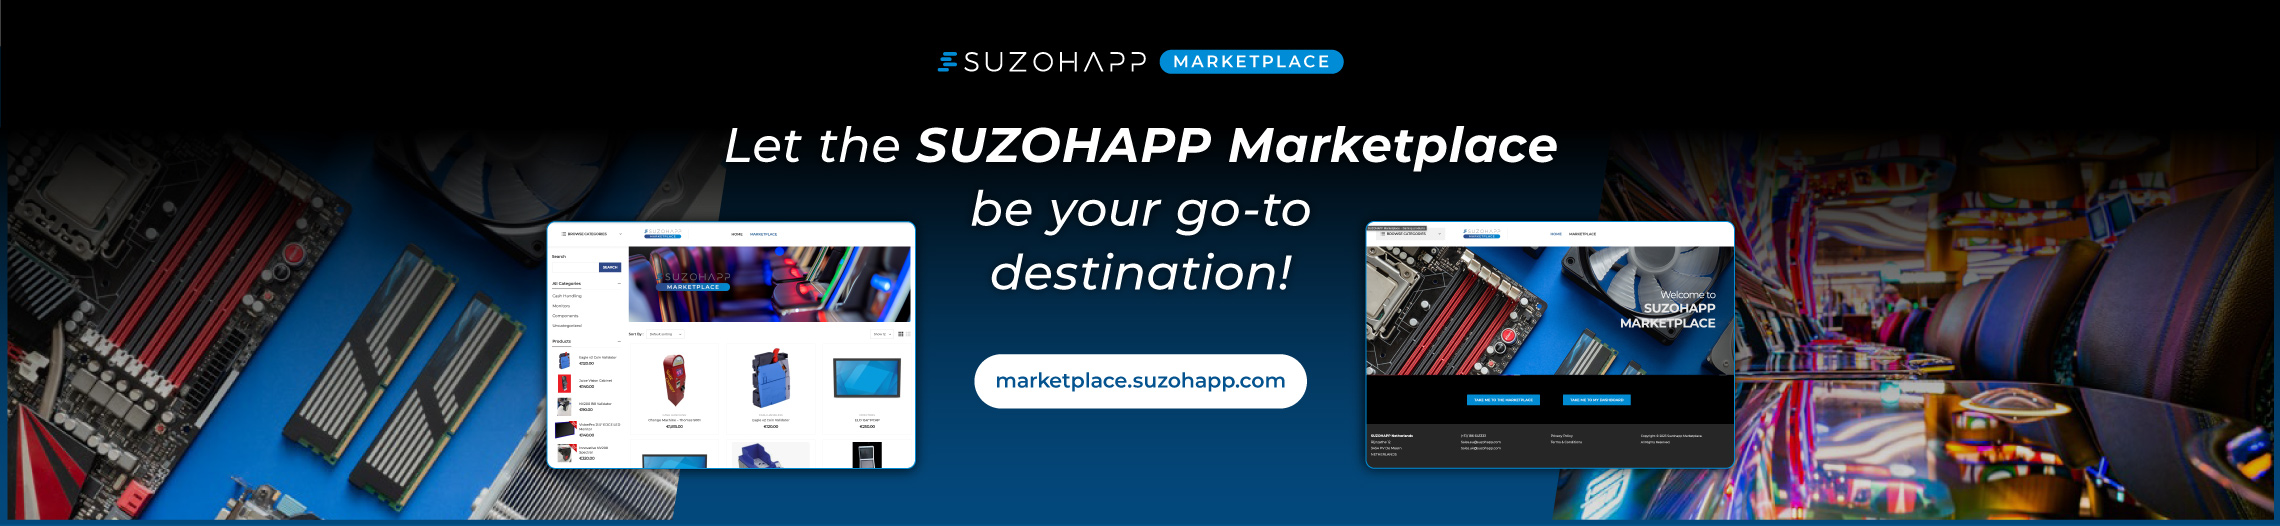 SUZOHAPP Marketplace!